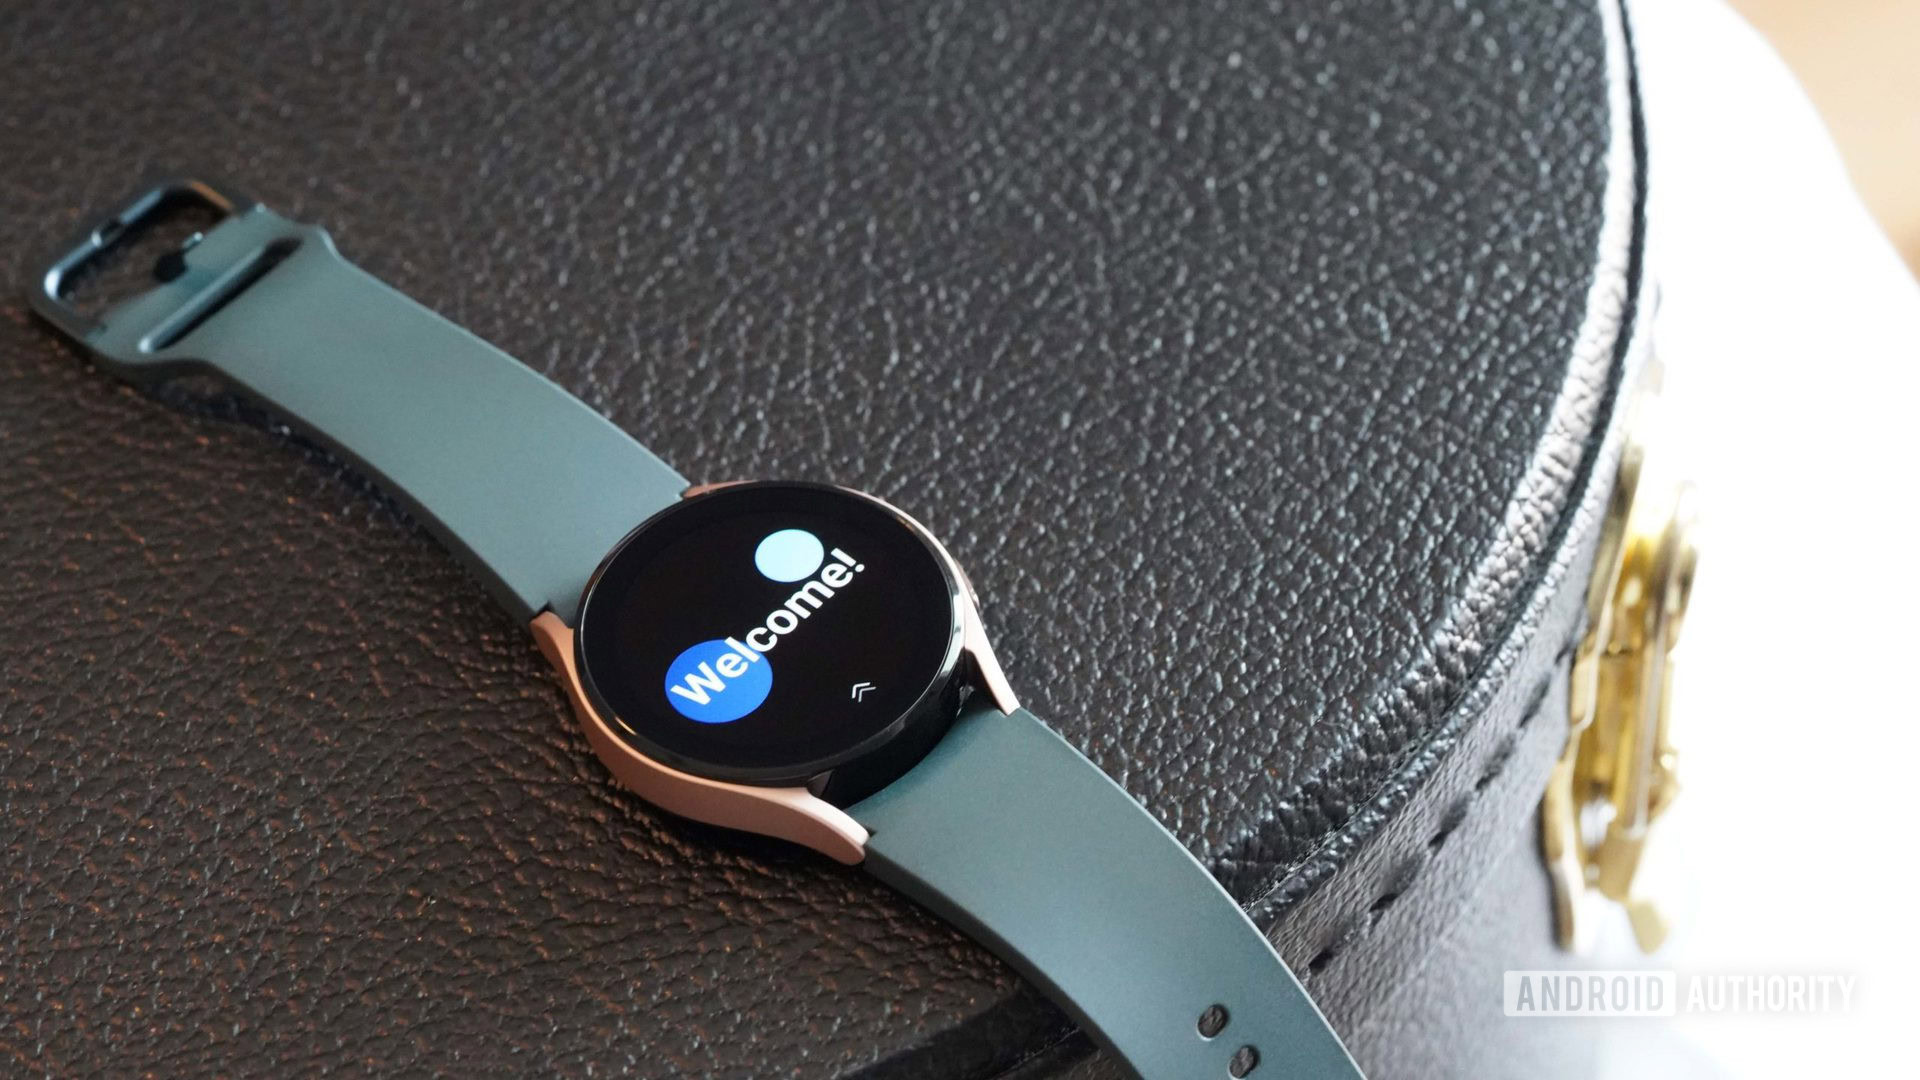 Samsung Galaxy Watch 4 là dòng sản phẩm đồng hồ thông minh hàng đầu hiện nay, với một loạt tính năng độc đáo giúp bạn kiểm soát cuộc sống của mình một cách dễ dàng. Và điều tuyệt vời là cài đặt Galaxy Watch 4 rất đơn giản, chỉ cần vài thao tác là bạn đã sẵn sàng khám phá thế giới của mình với chiếc đồng hồ thông minh đáng kinh ngạc này.